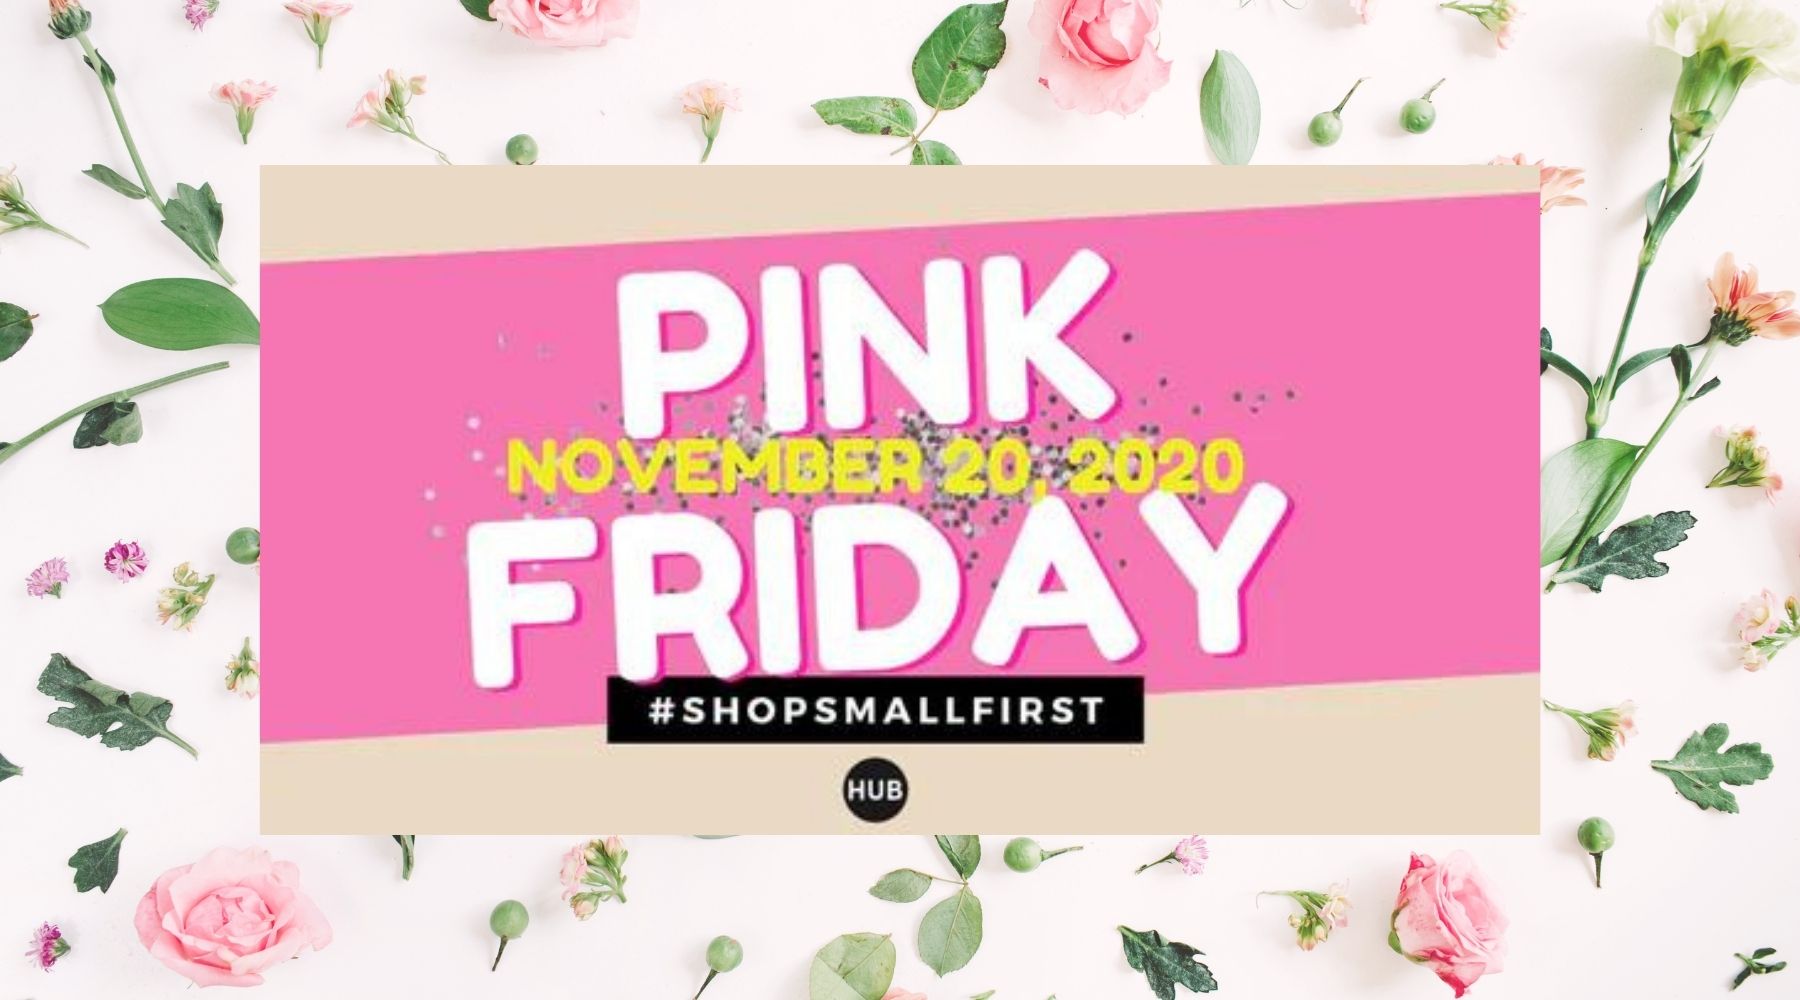 Pink Friday November 20th, 2020